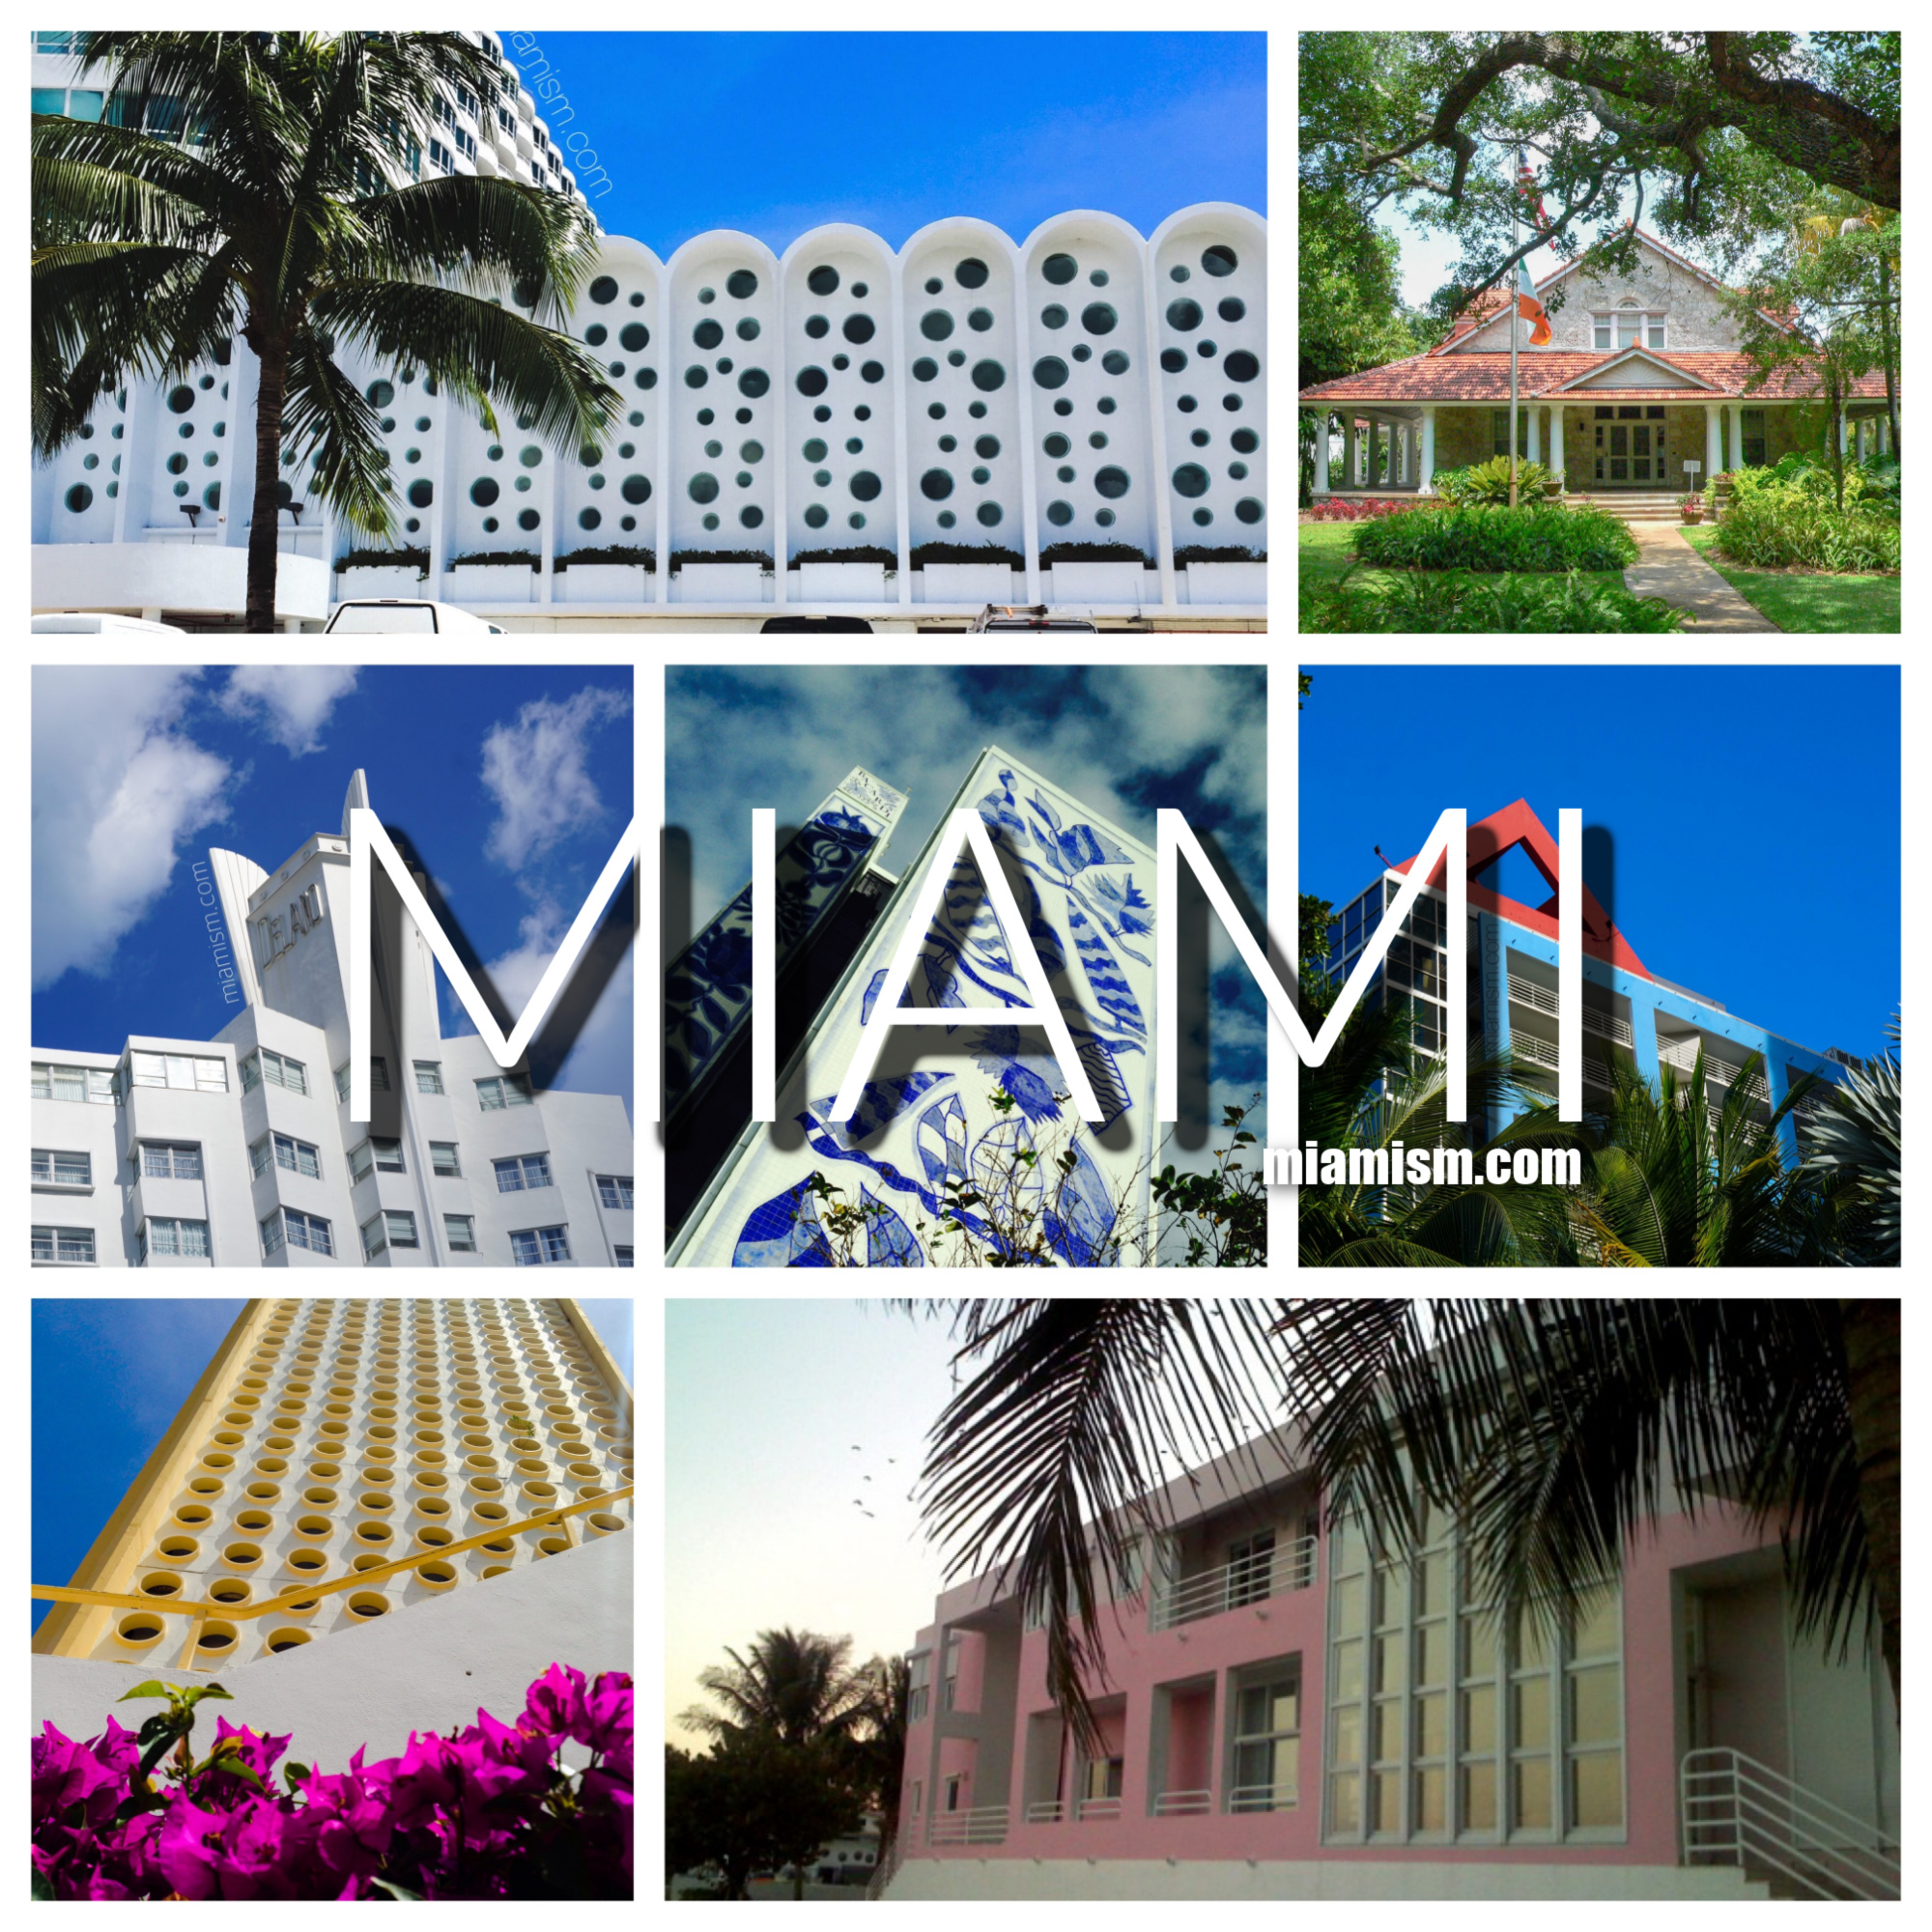 Miami architecure : a curated list of architectural landmarks in miami via miamism.com